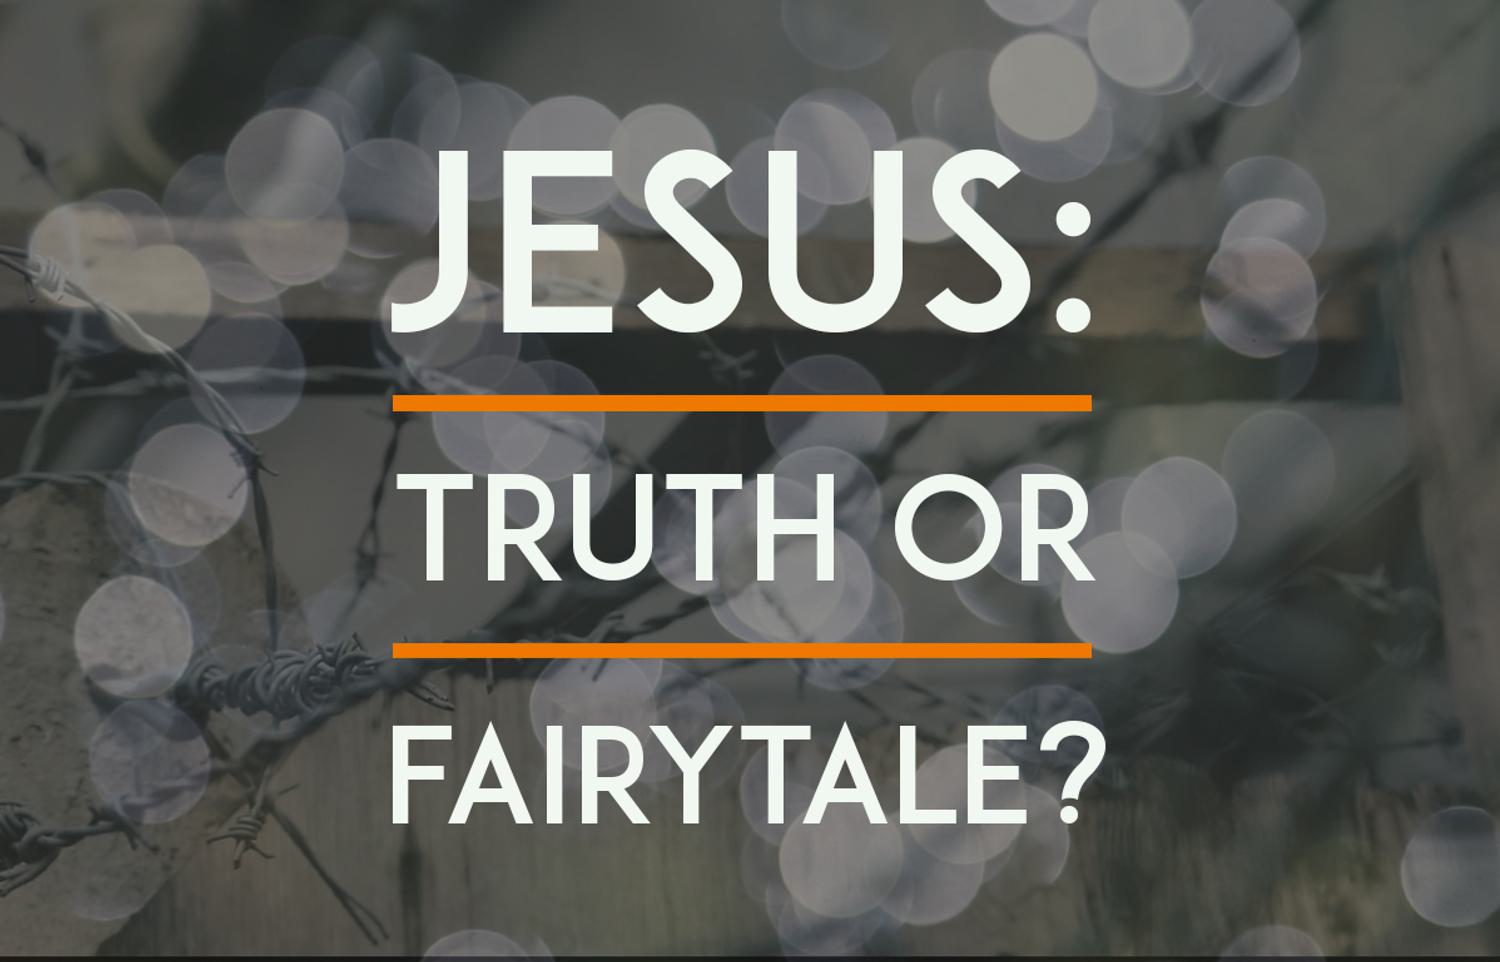 Jesus: Truth or Fairytale?